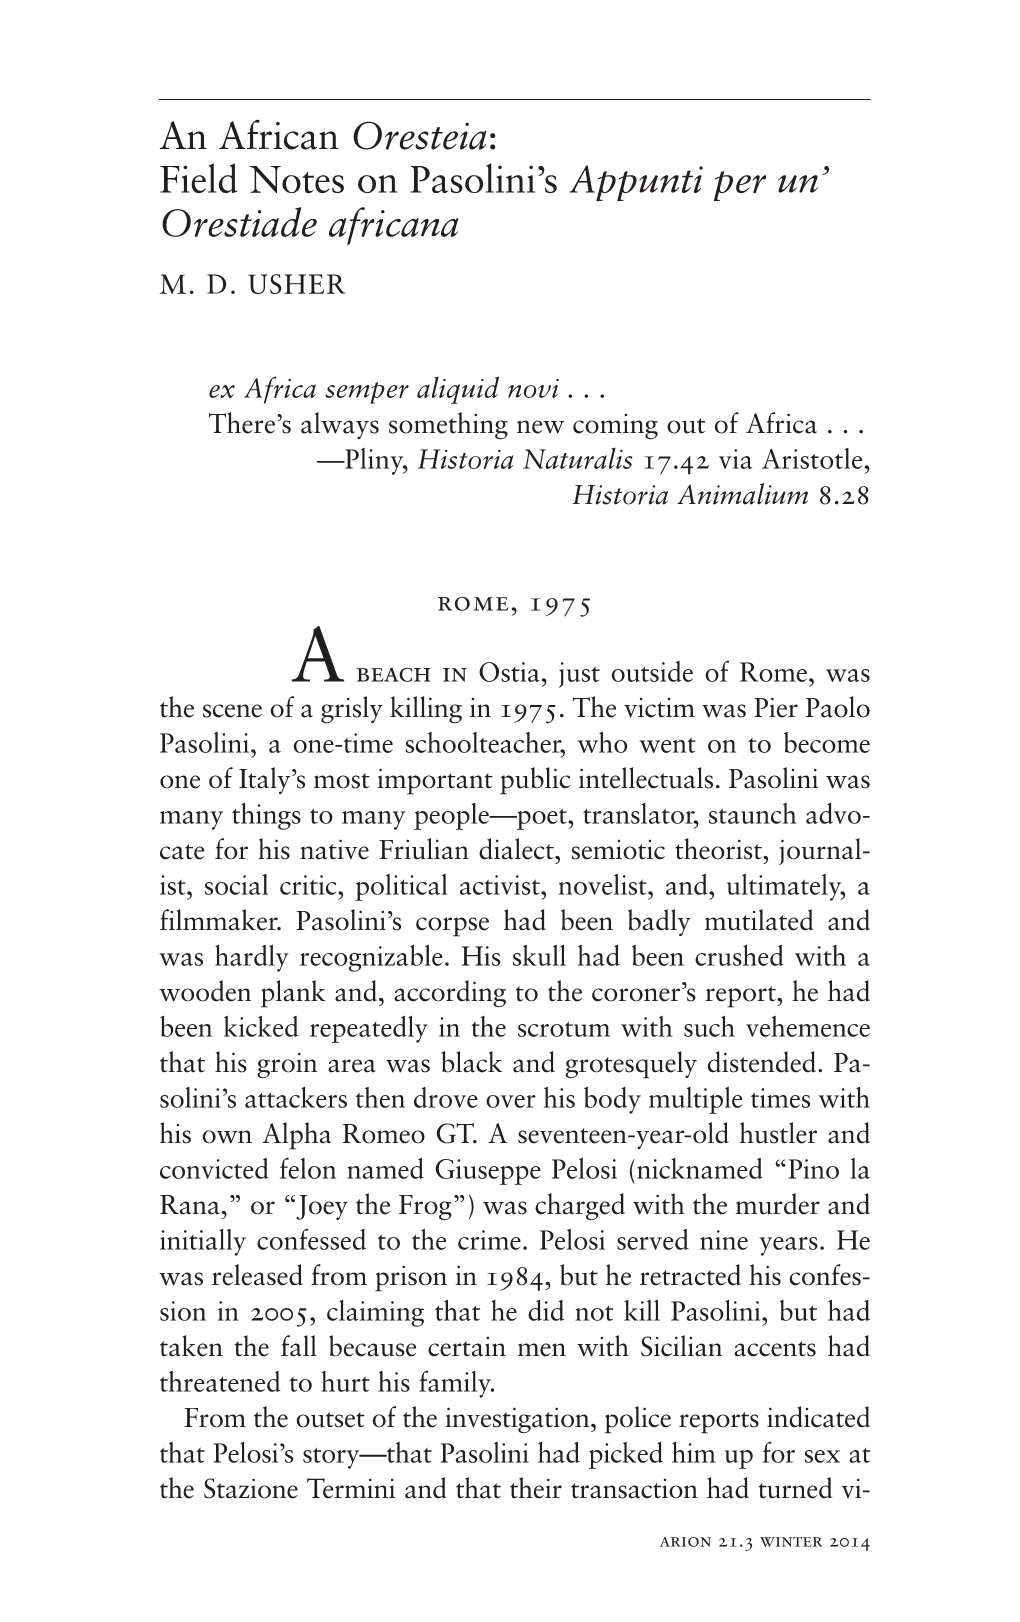 An African Oresteia: Field Notes on Pasolini's Appunti Per Un' Orestiade